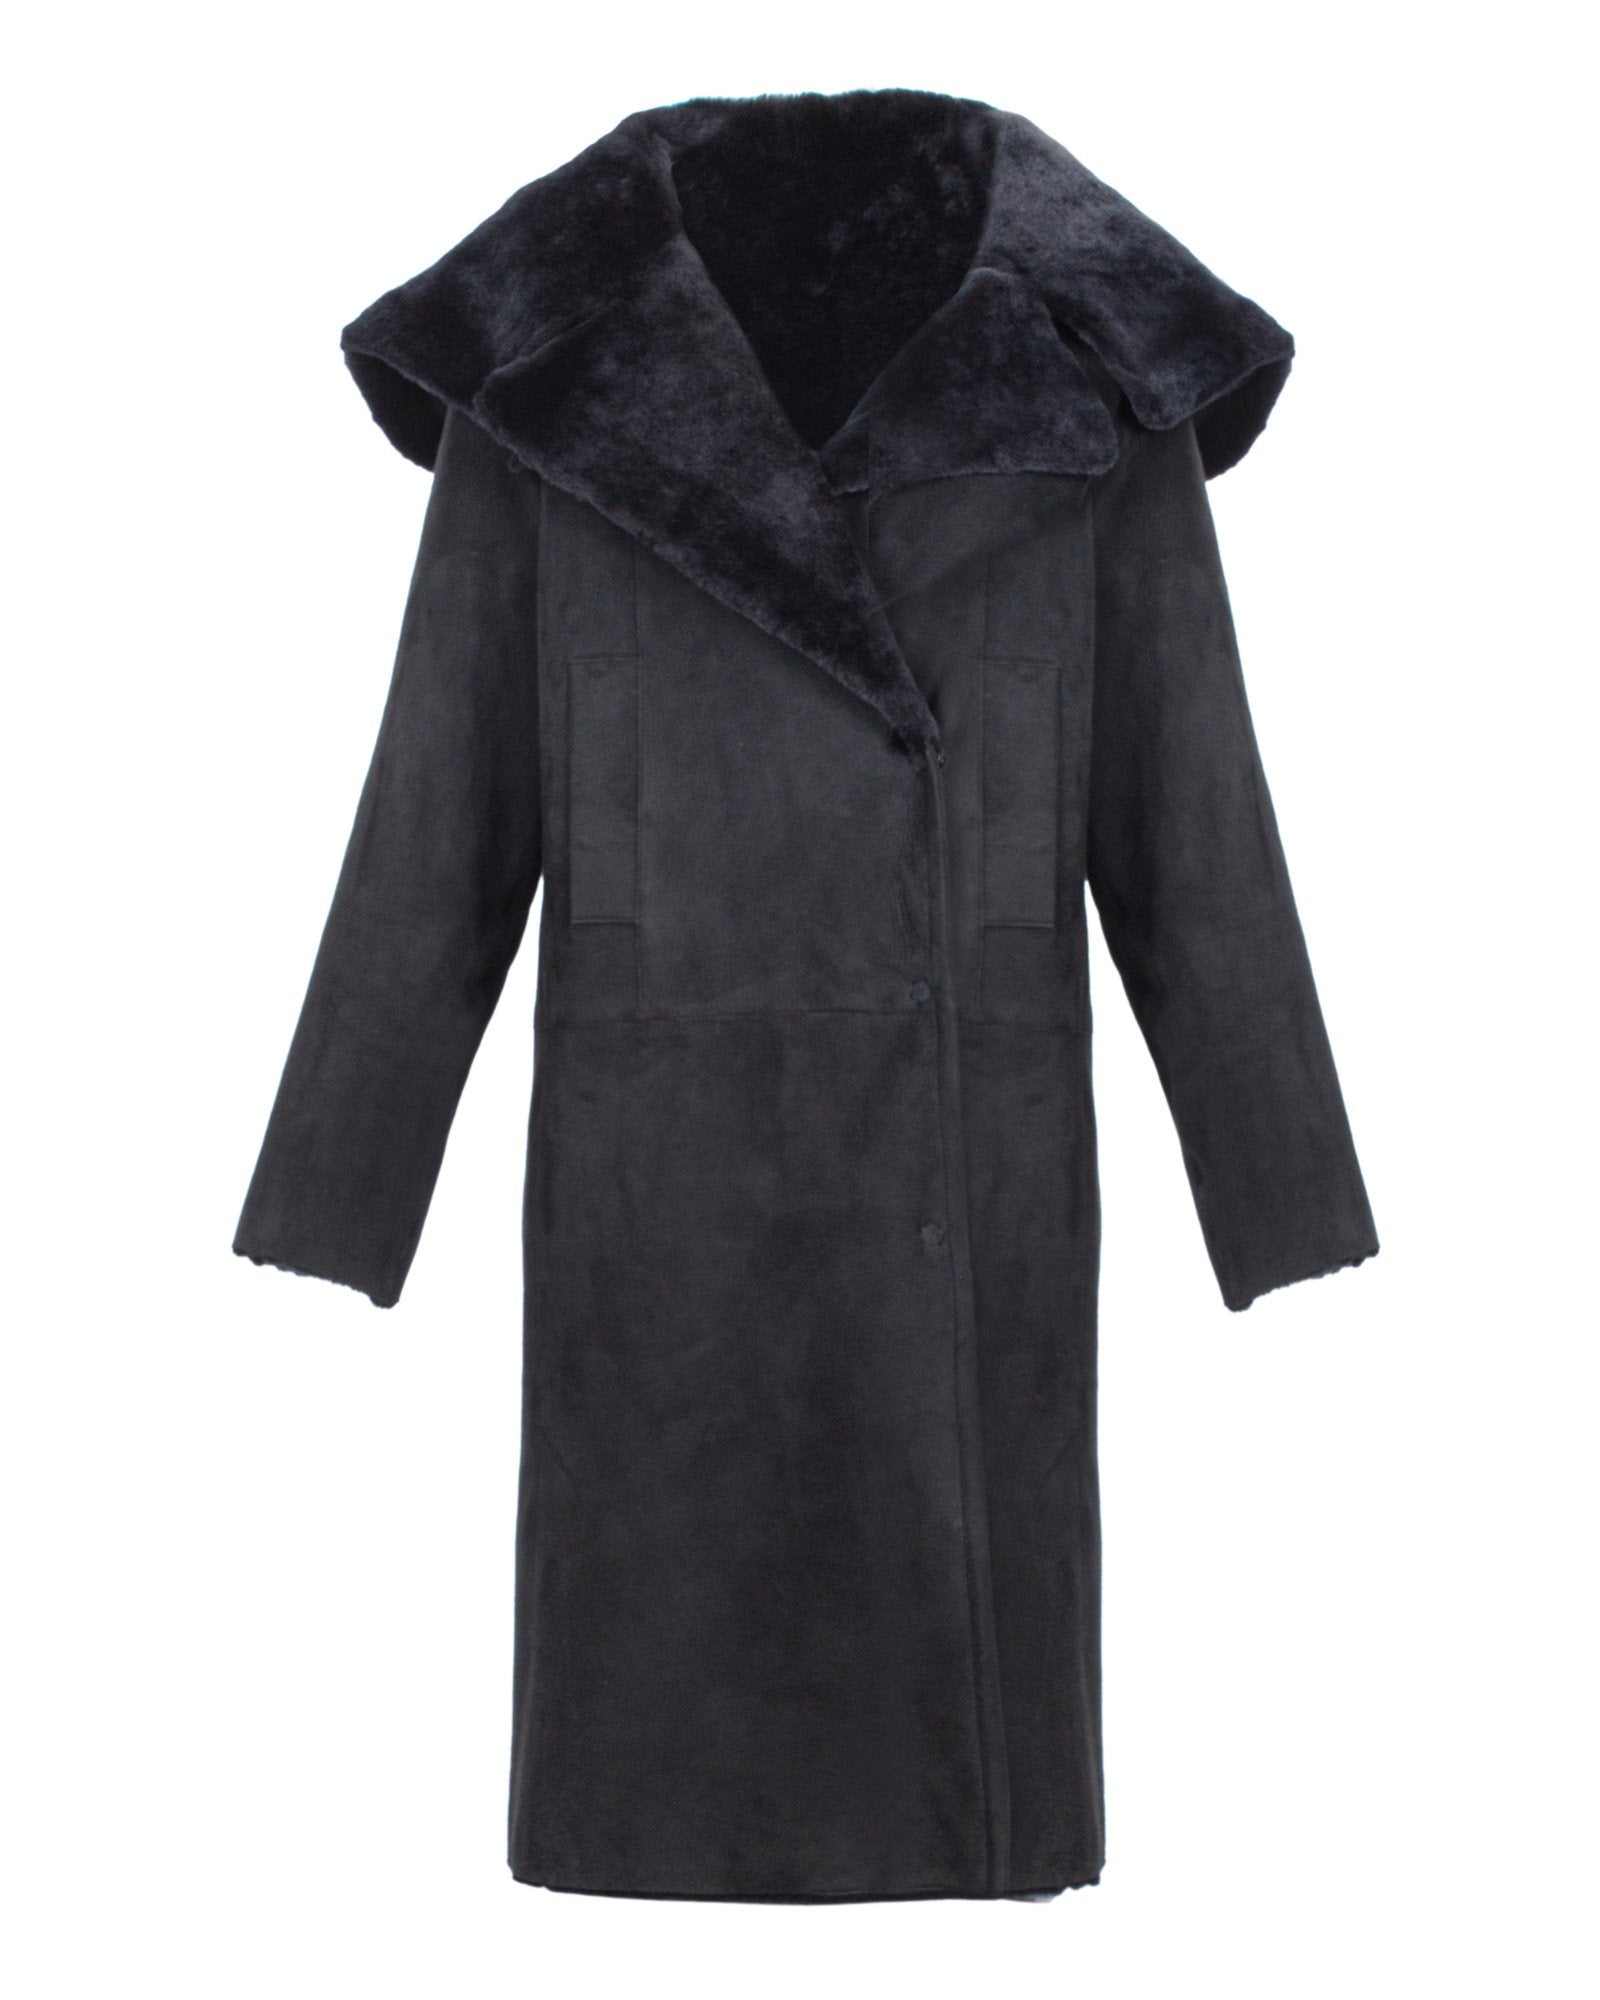 Black Long Shearling Coat